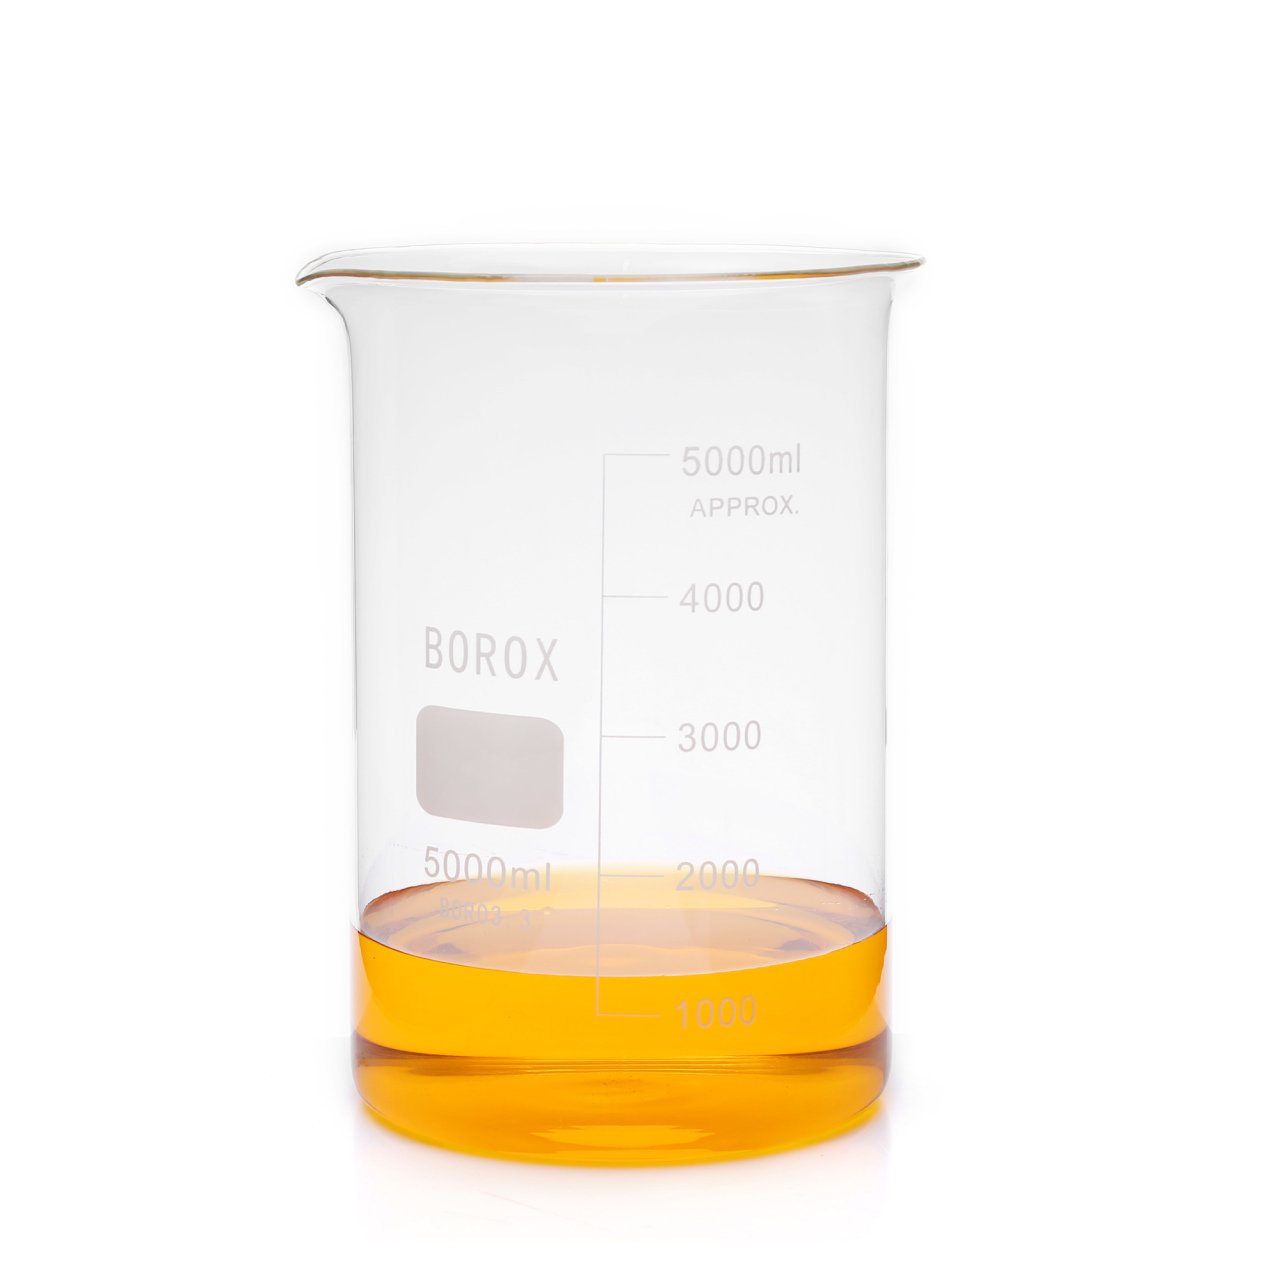 Borox Cam Beher 5000 ml - Kısa Form Isıya Dayanıklı Beaker